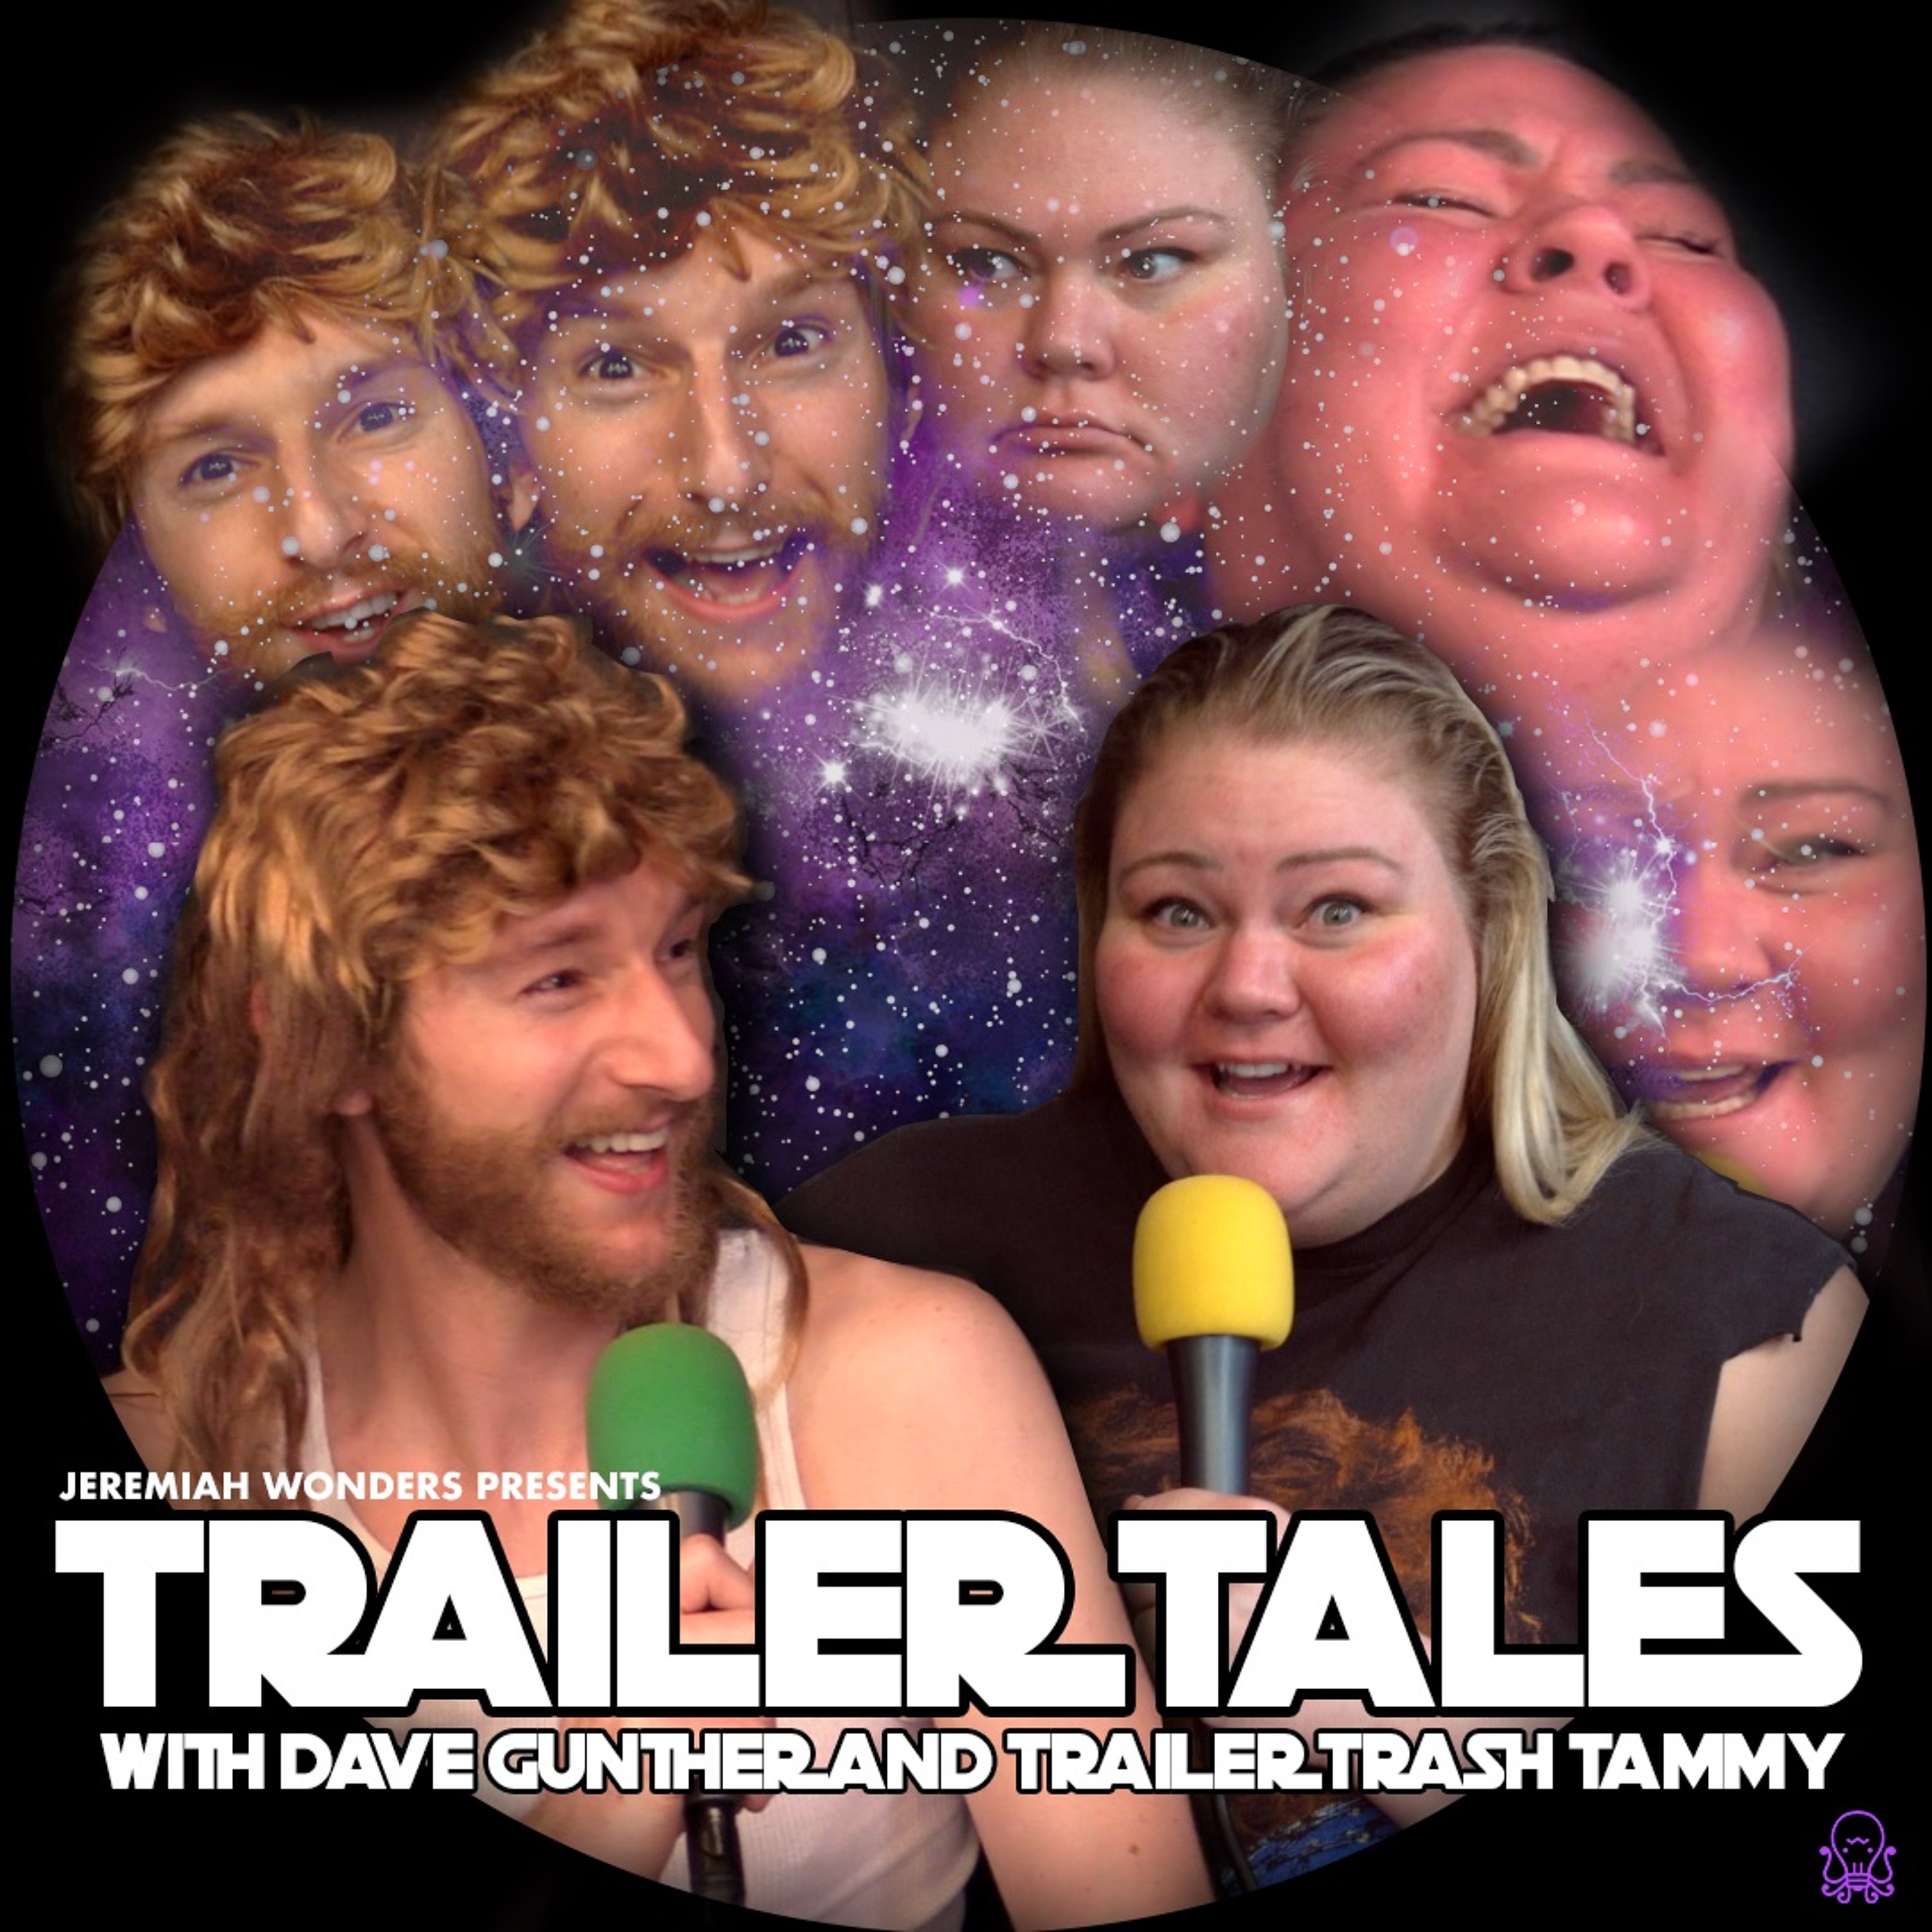 Trailer trash tammy boobs